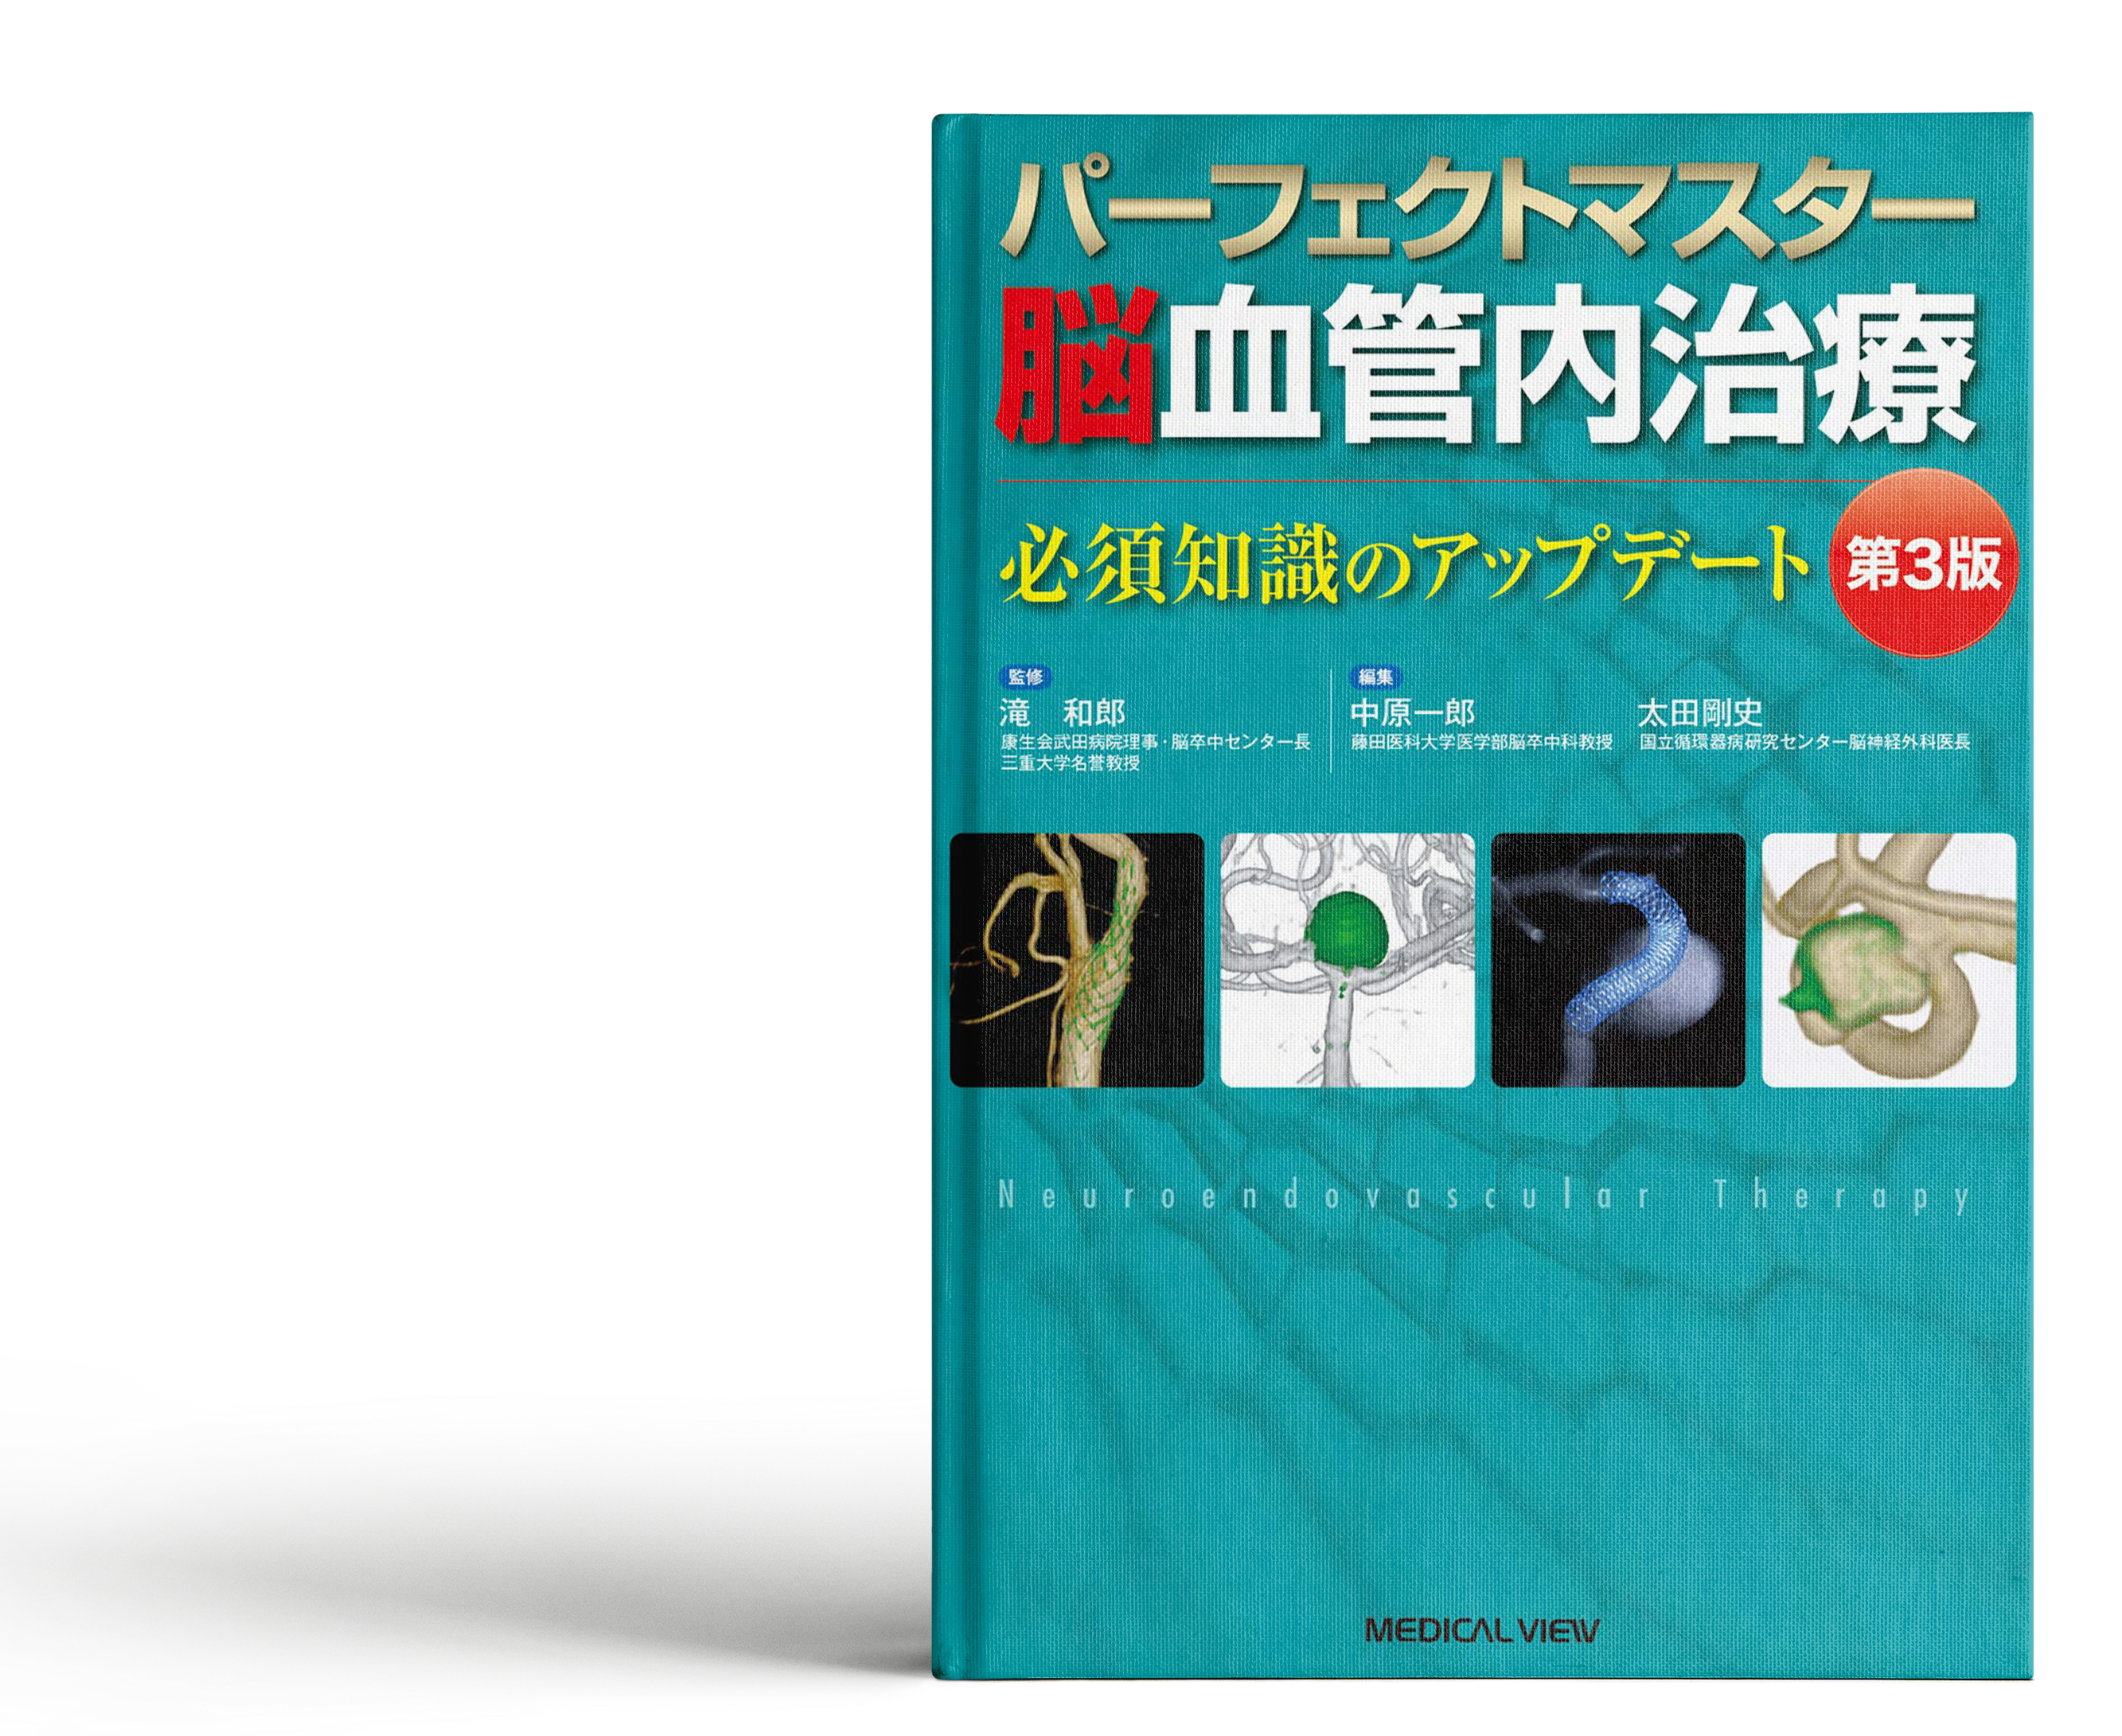 パーフェクトマスター脳血管内治療 第3版が刊行されました - 藤田医科 